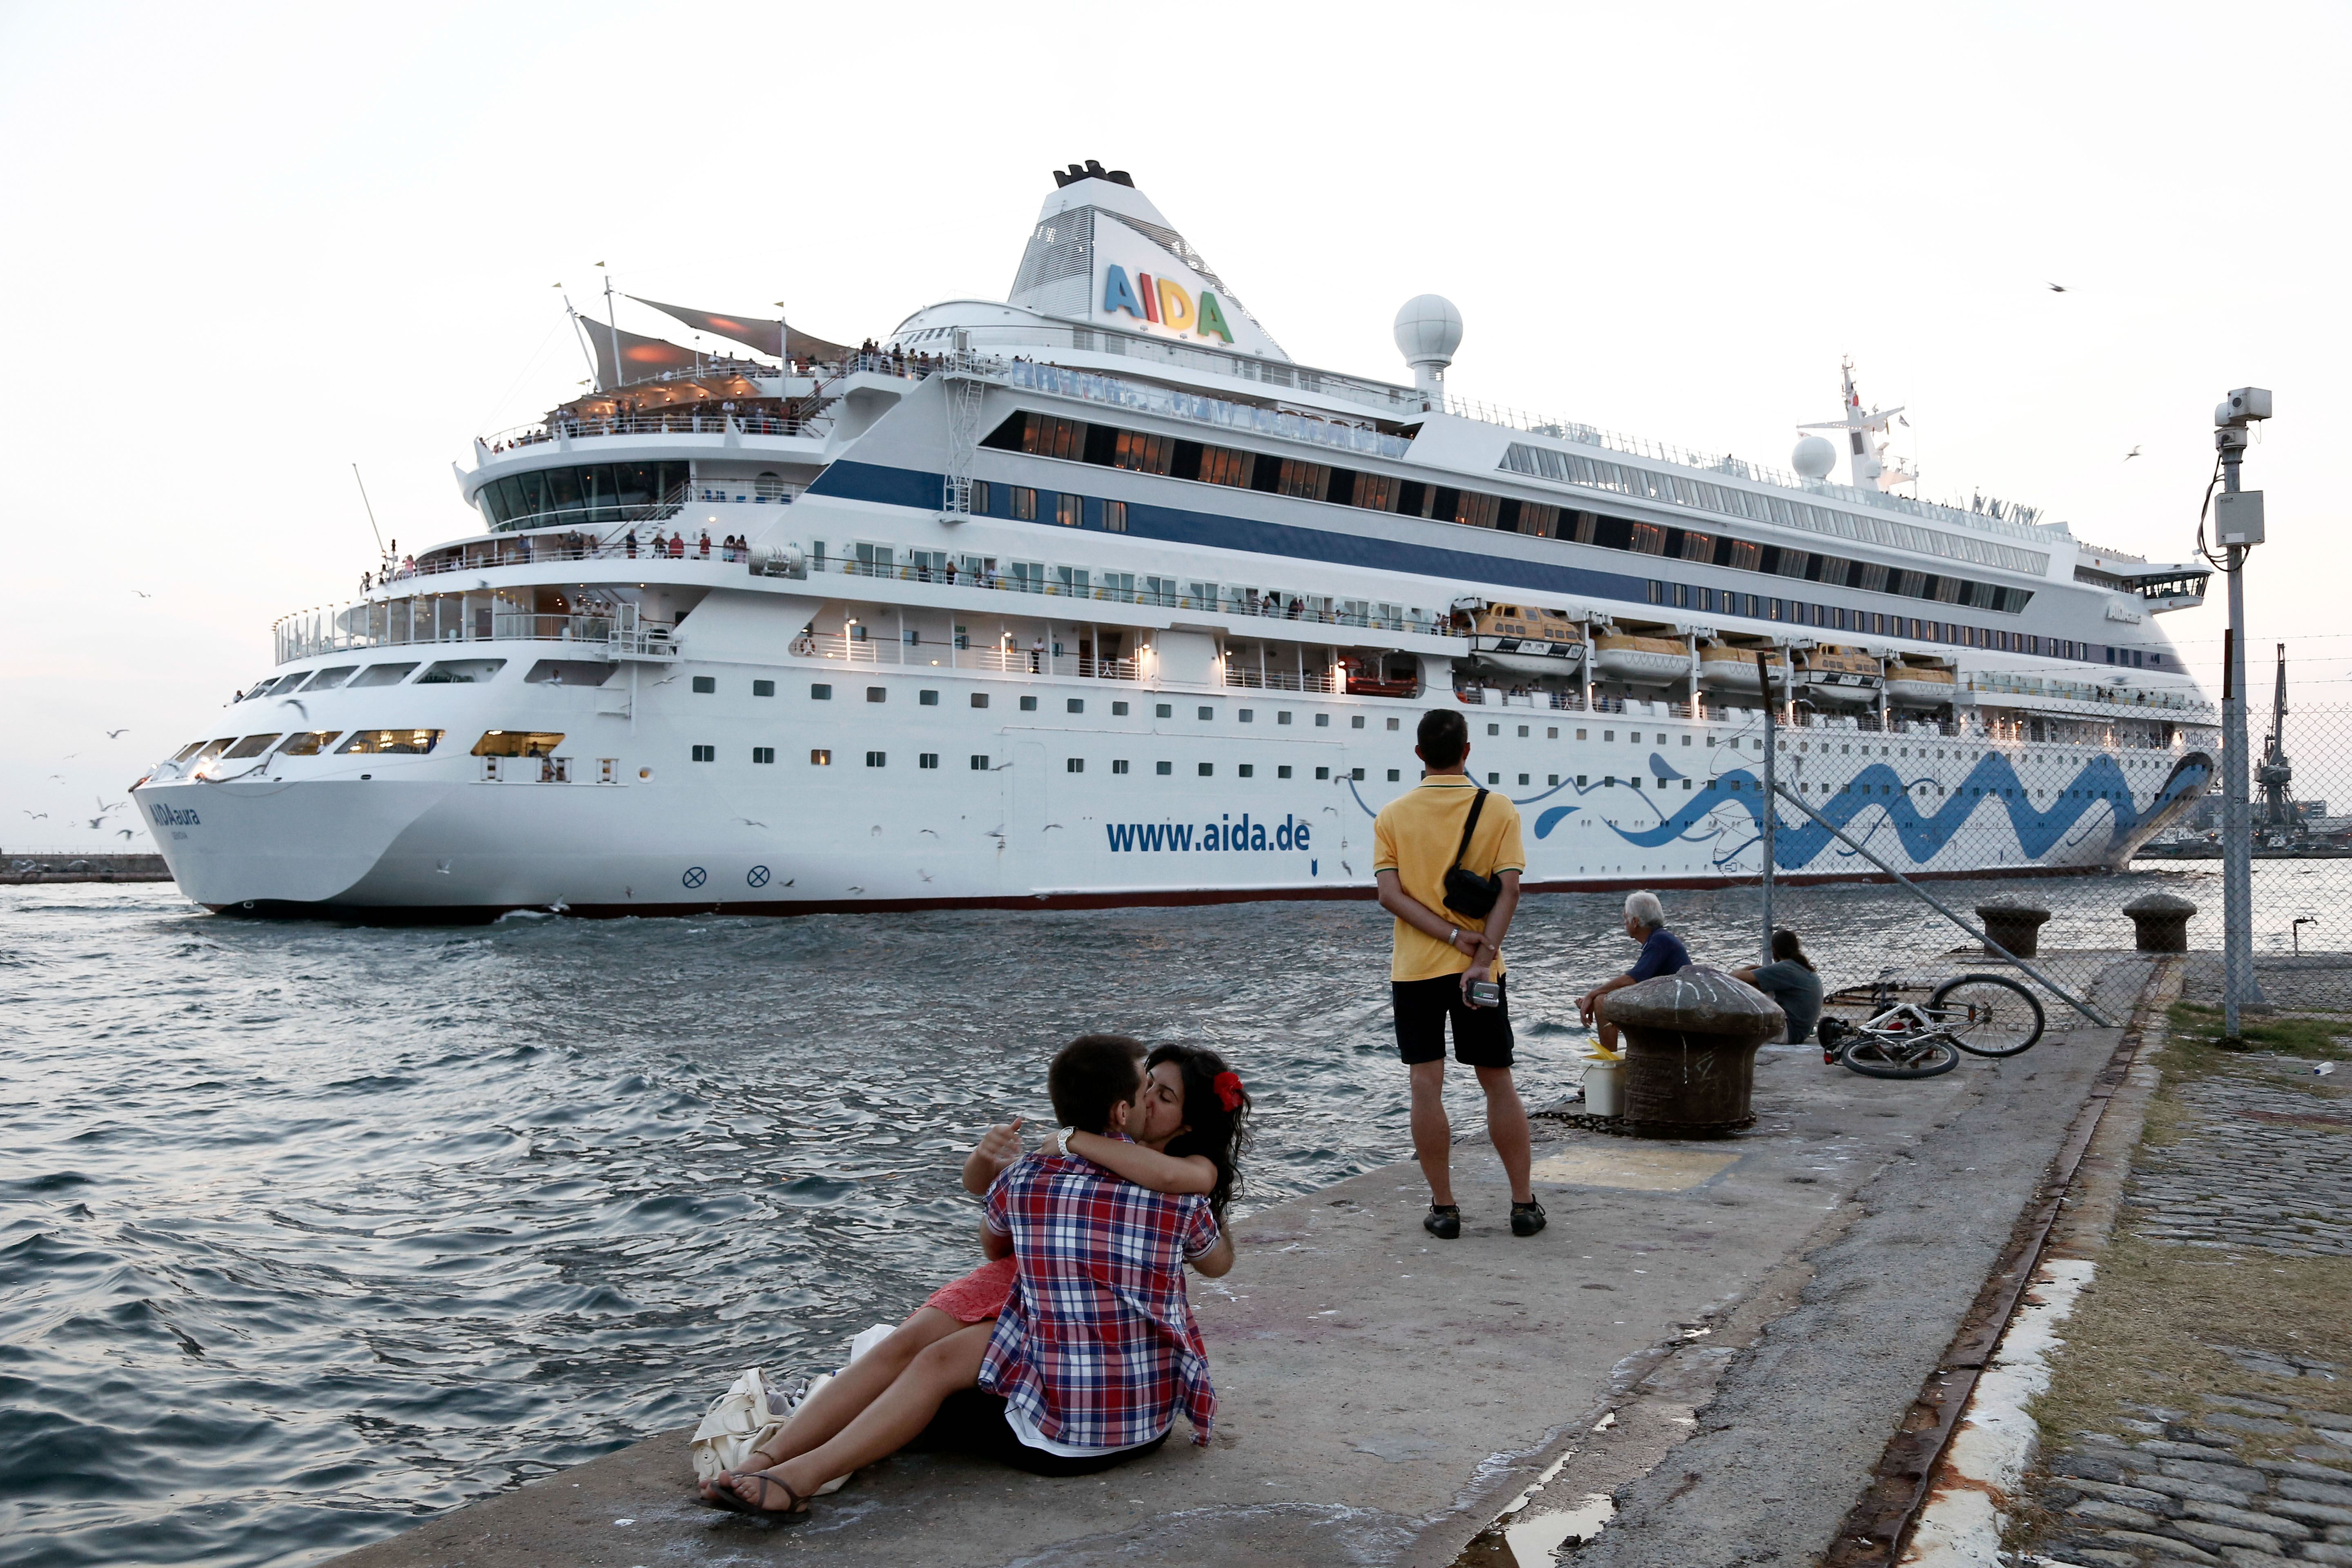 Προορισμός των κρουαζιερόπλοιων η Ελλάδα αντί της Τουρκίας λόγω ανασφάλειας